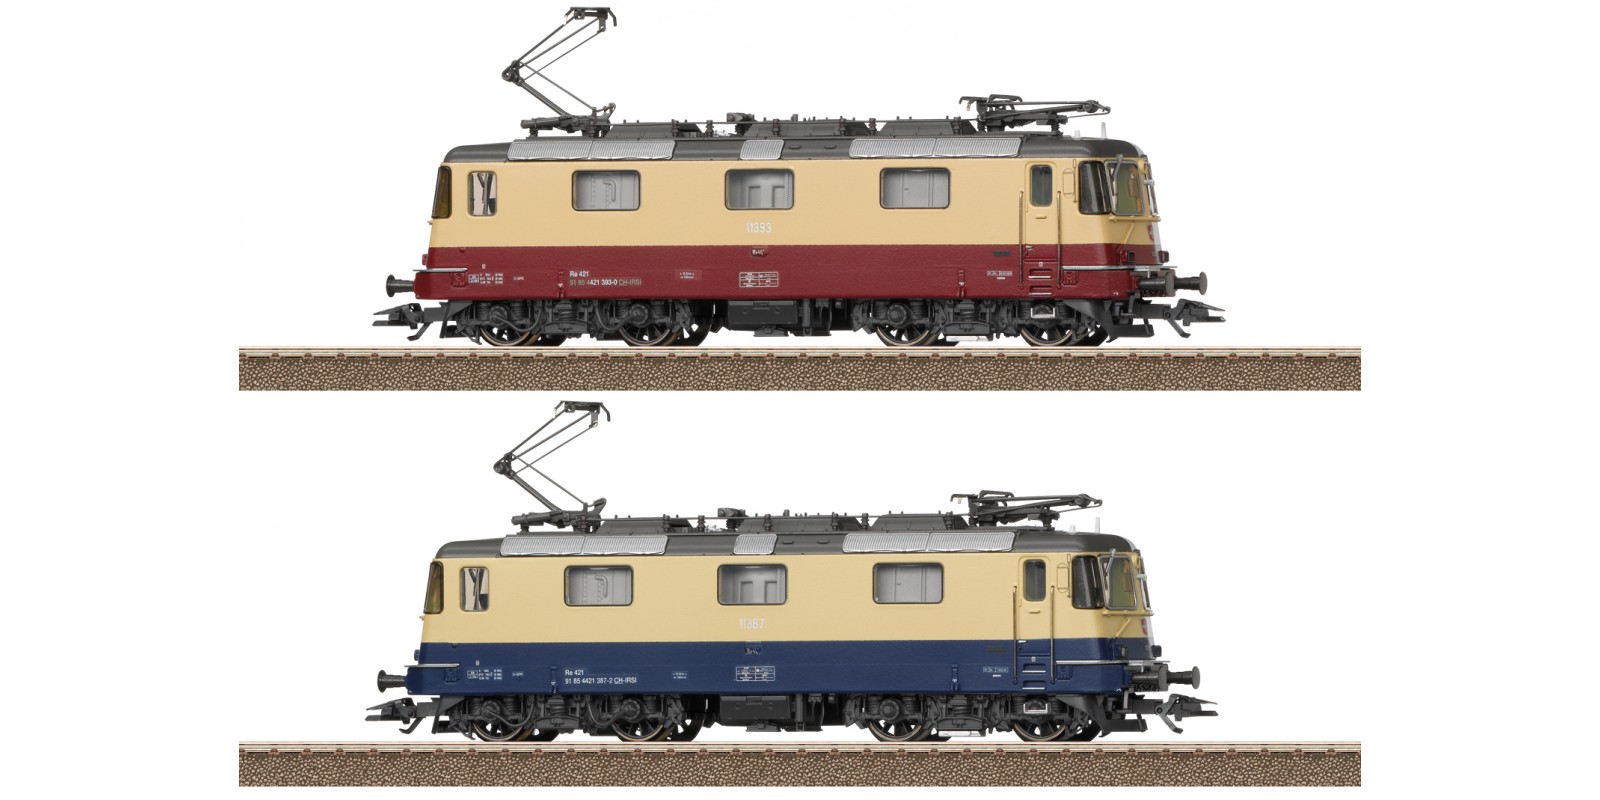 T25100 Class Re 421 Double Electric Locomotive Set